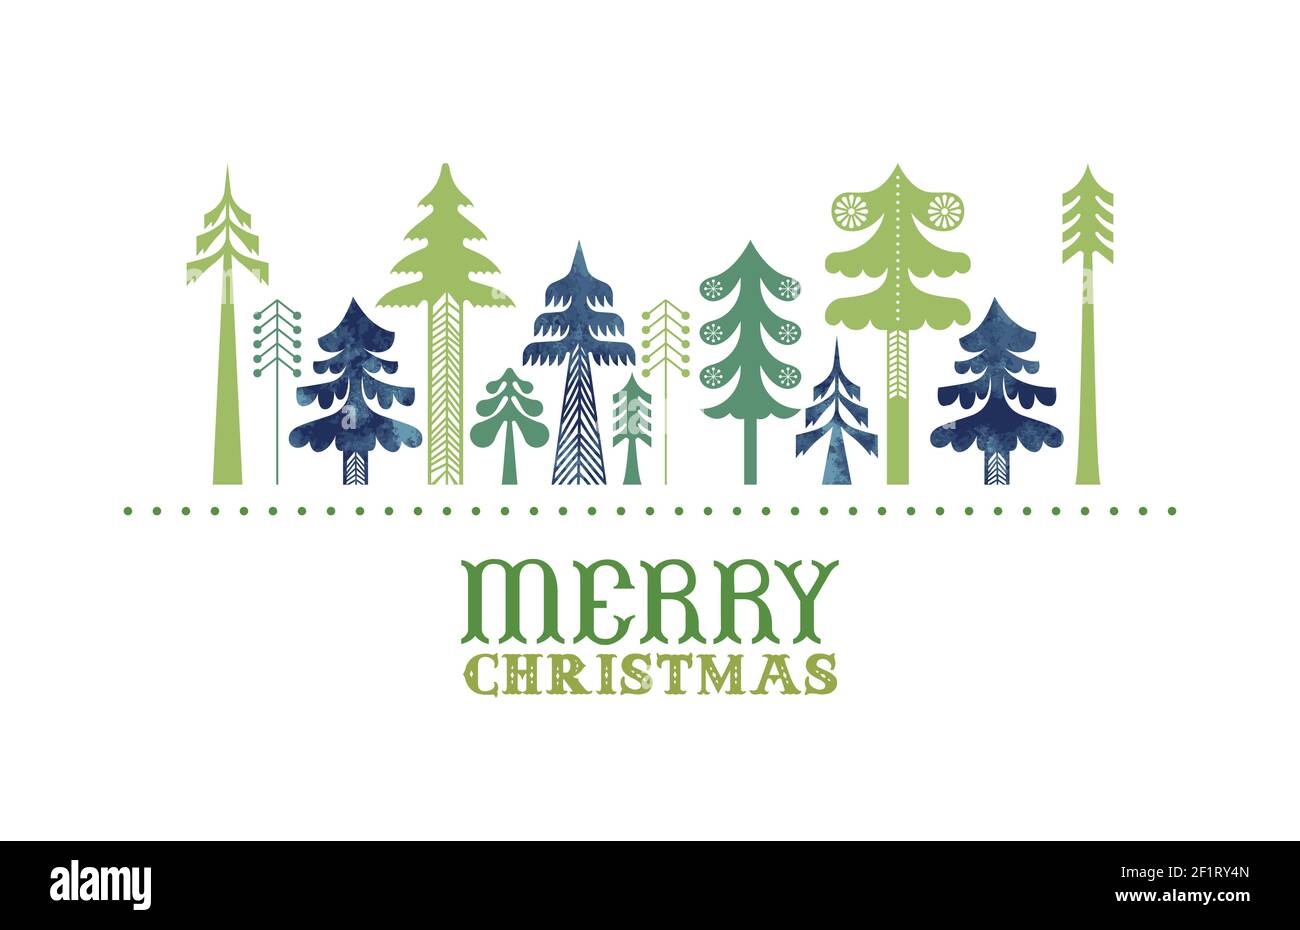 Allegro biglietto di auguri di Natale illustrazione di alberi di pino tradizionale arte popolare verde in tessitura acquerello. Design geometric vintage nordico per le vacanze Illustrazione Vettoriale